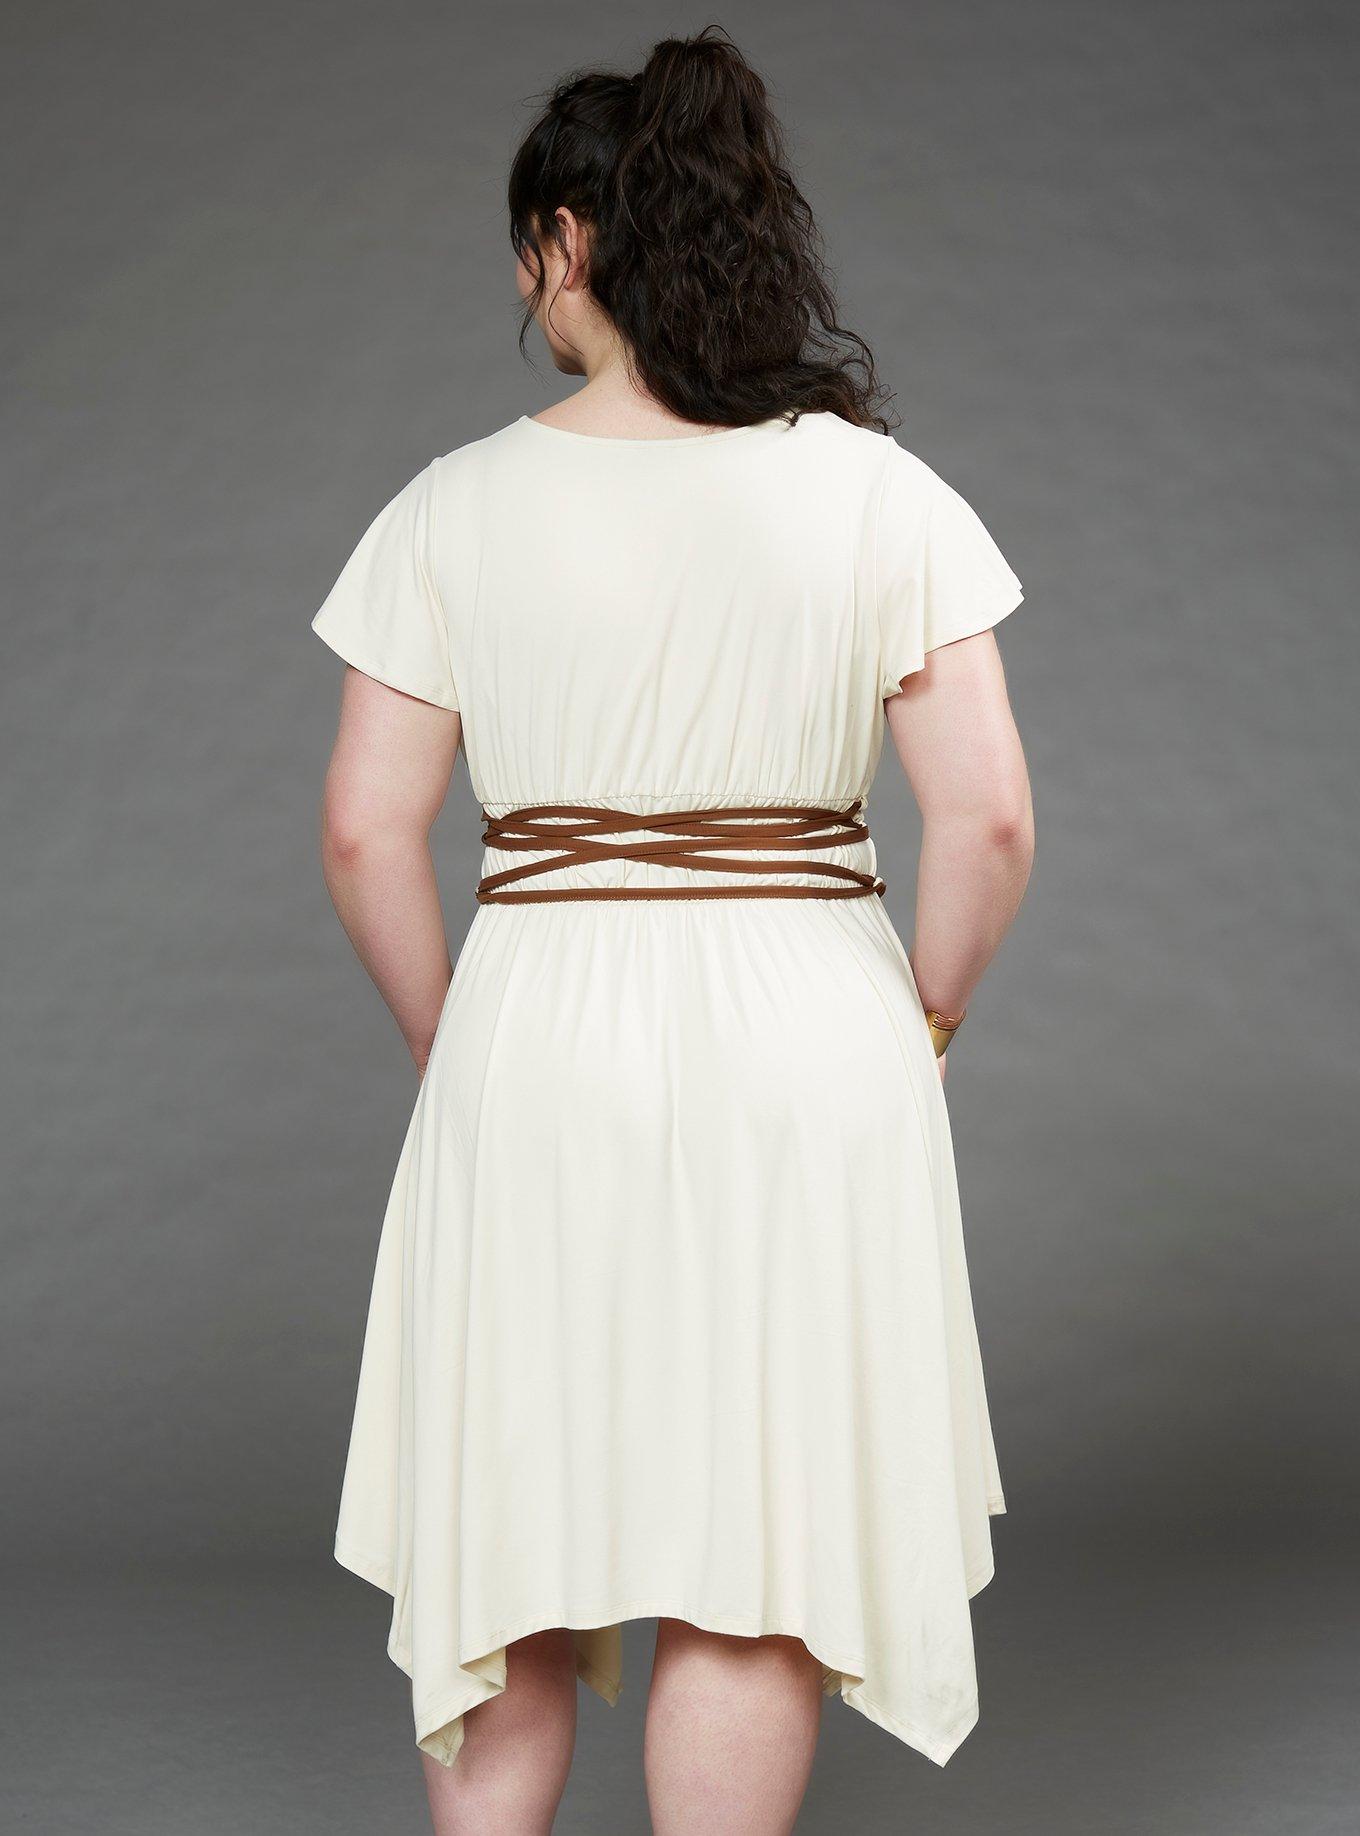 Her Universe Star Wars Rey Dress Plus Size, CREAM, alternate